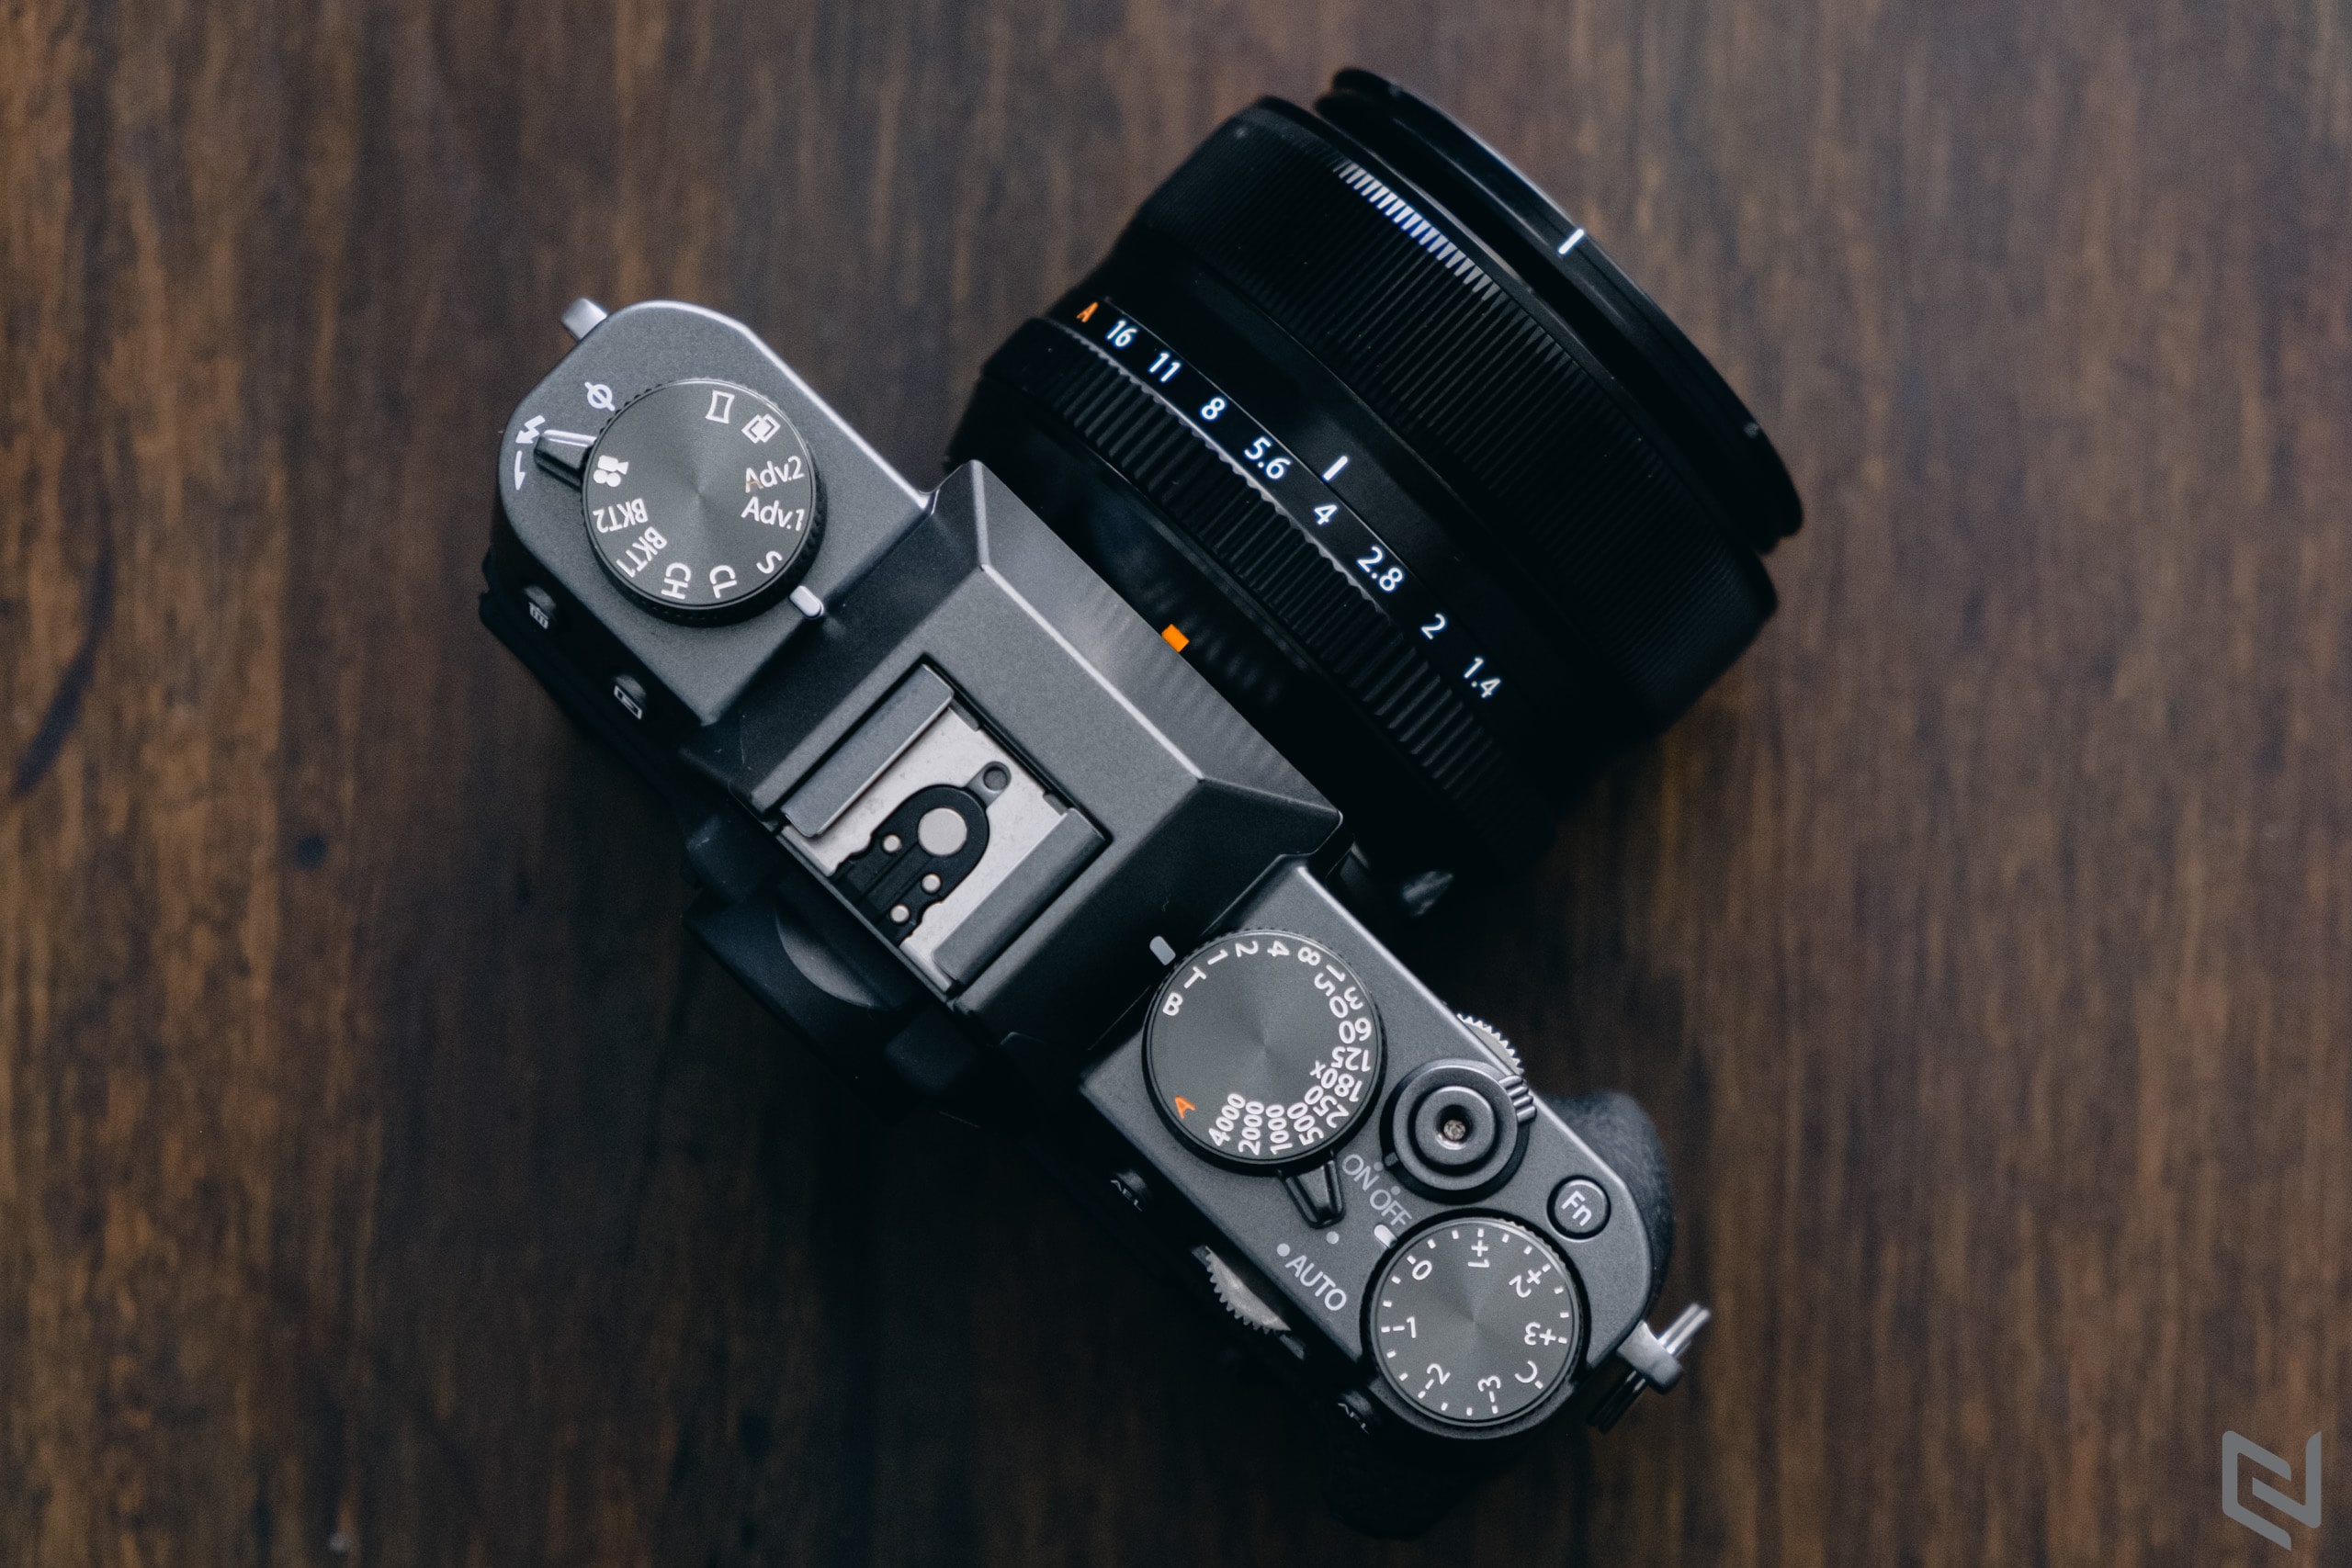 So sánh X-T30 với X-S10: Hai máy ảnh Fujifilm tầm trung có ưu và nhược điểm gì?